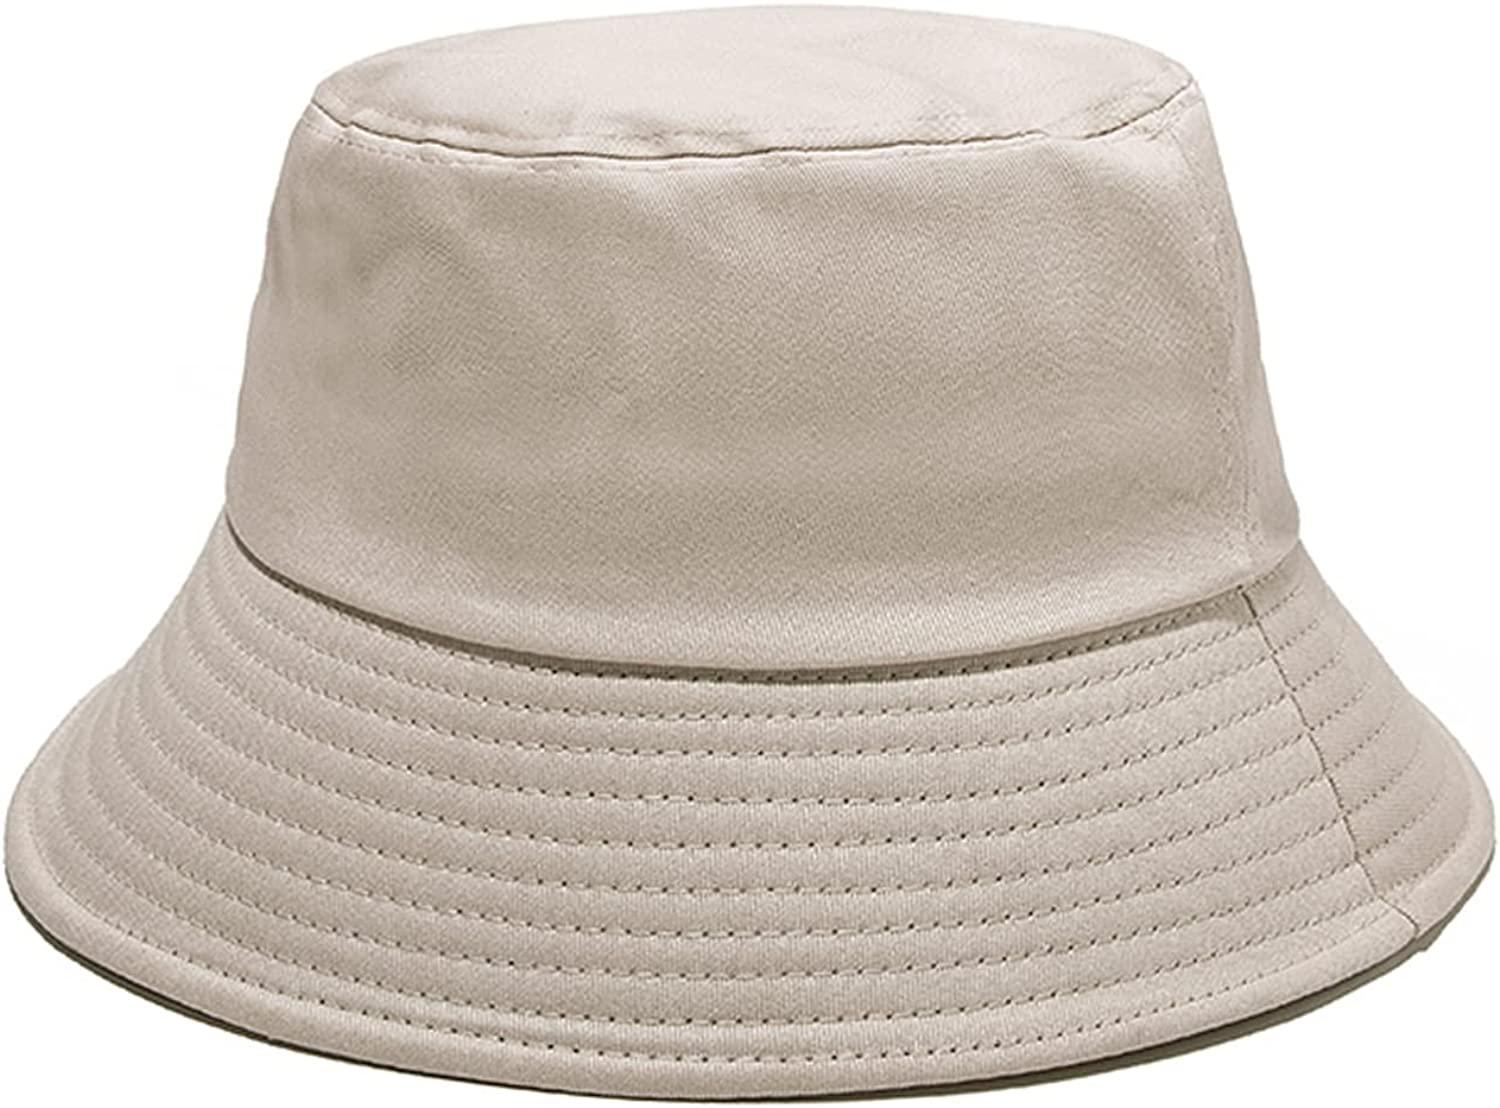 Bucket Hat for Women and Men